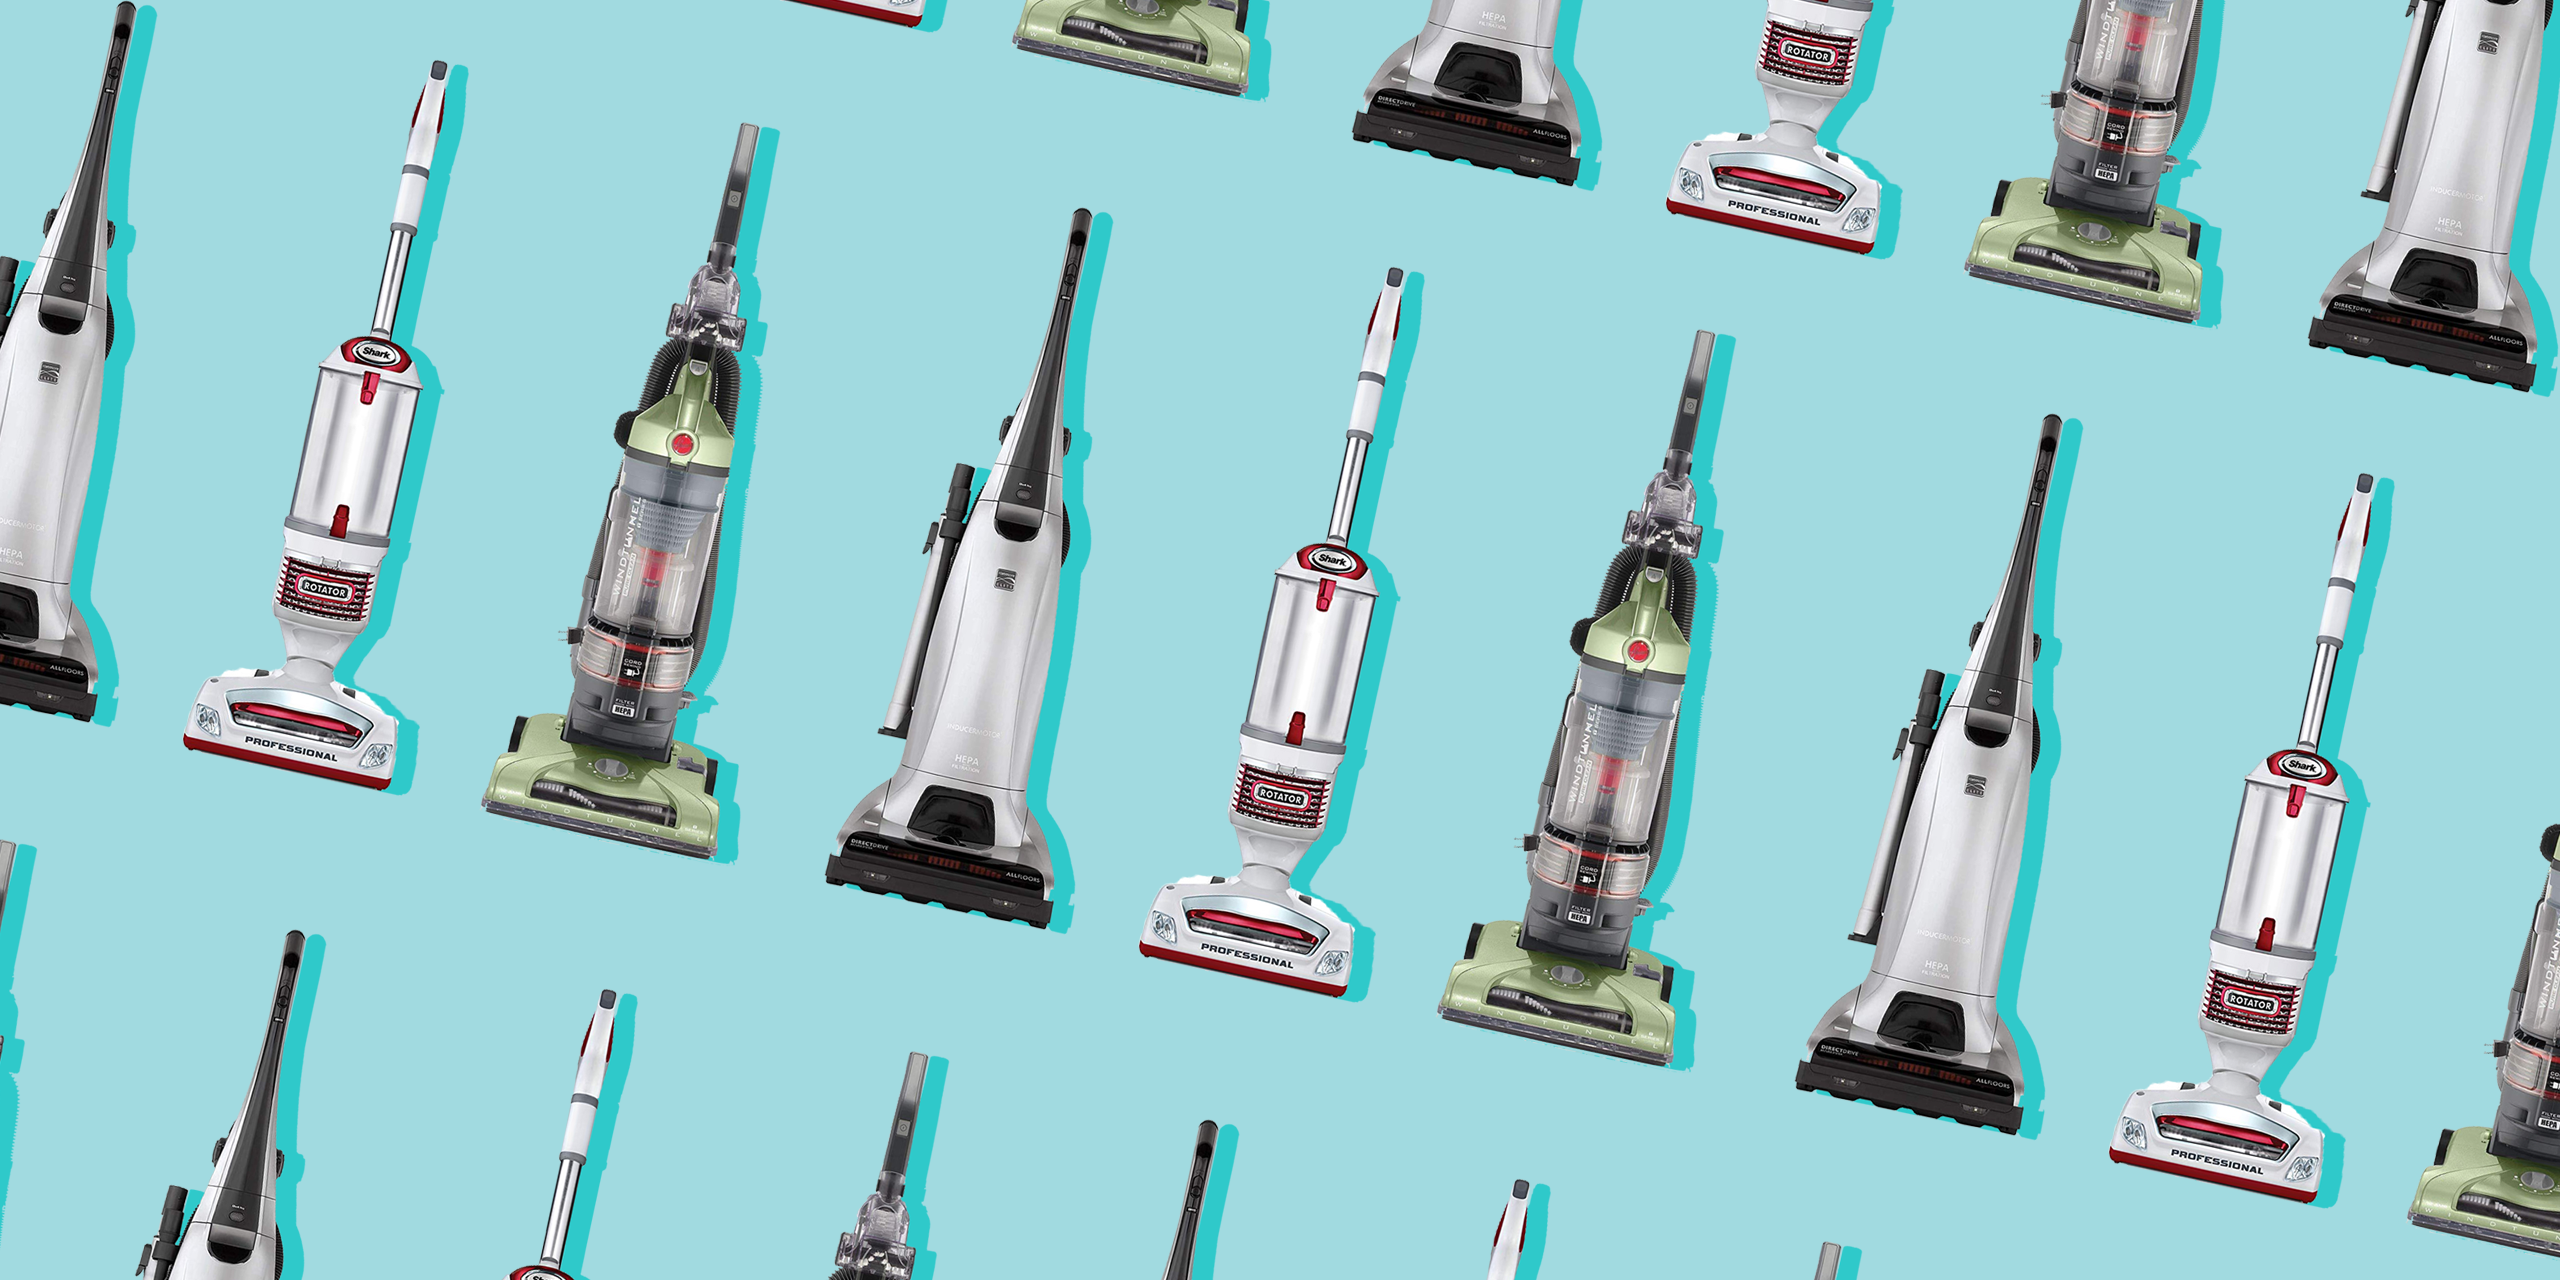 8 Best Hepa Vacuum Cleaners Reviews 2020